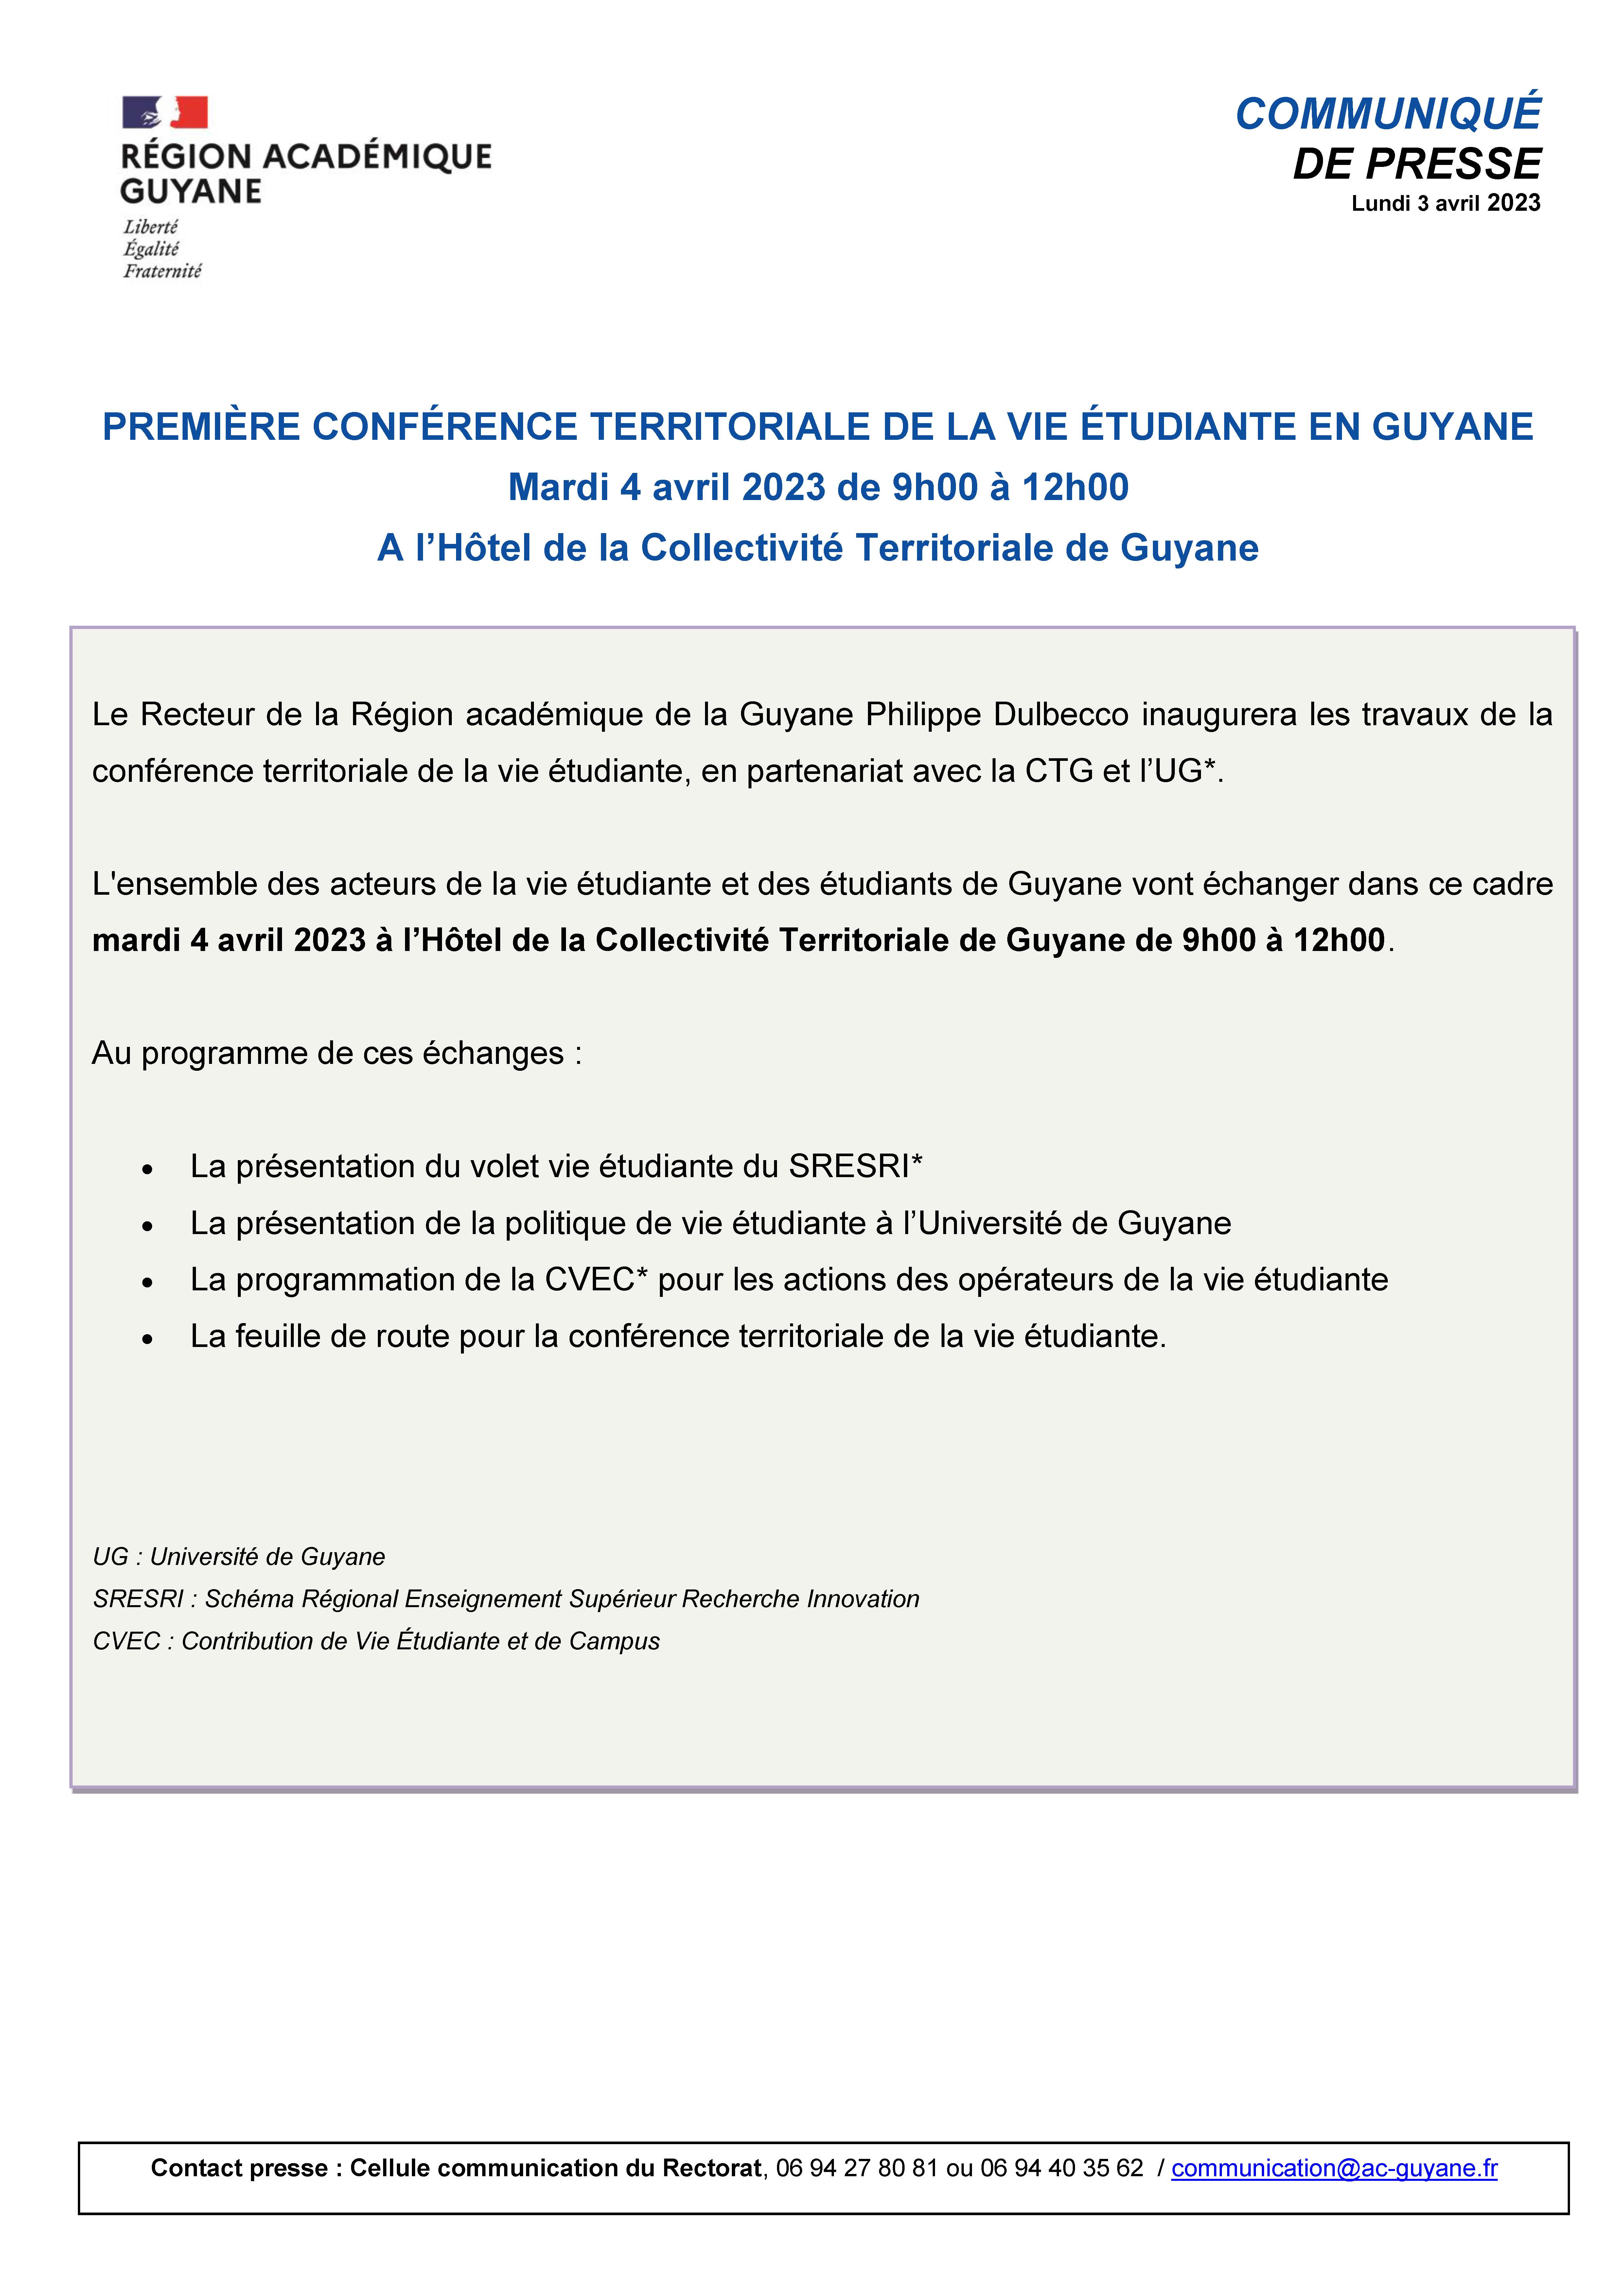 [CP]1ère Conférence territoriale sur le Vie Etudiante - Hotel de la CTG mardi 4 avril 2023 de 9h00 à 12h00 